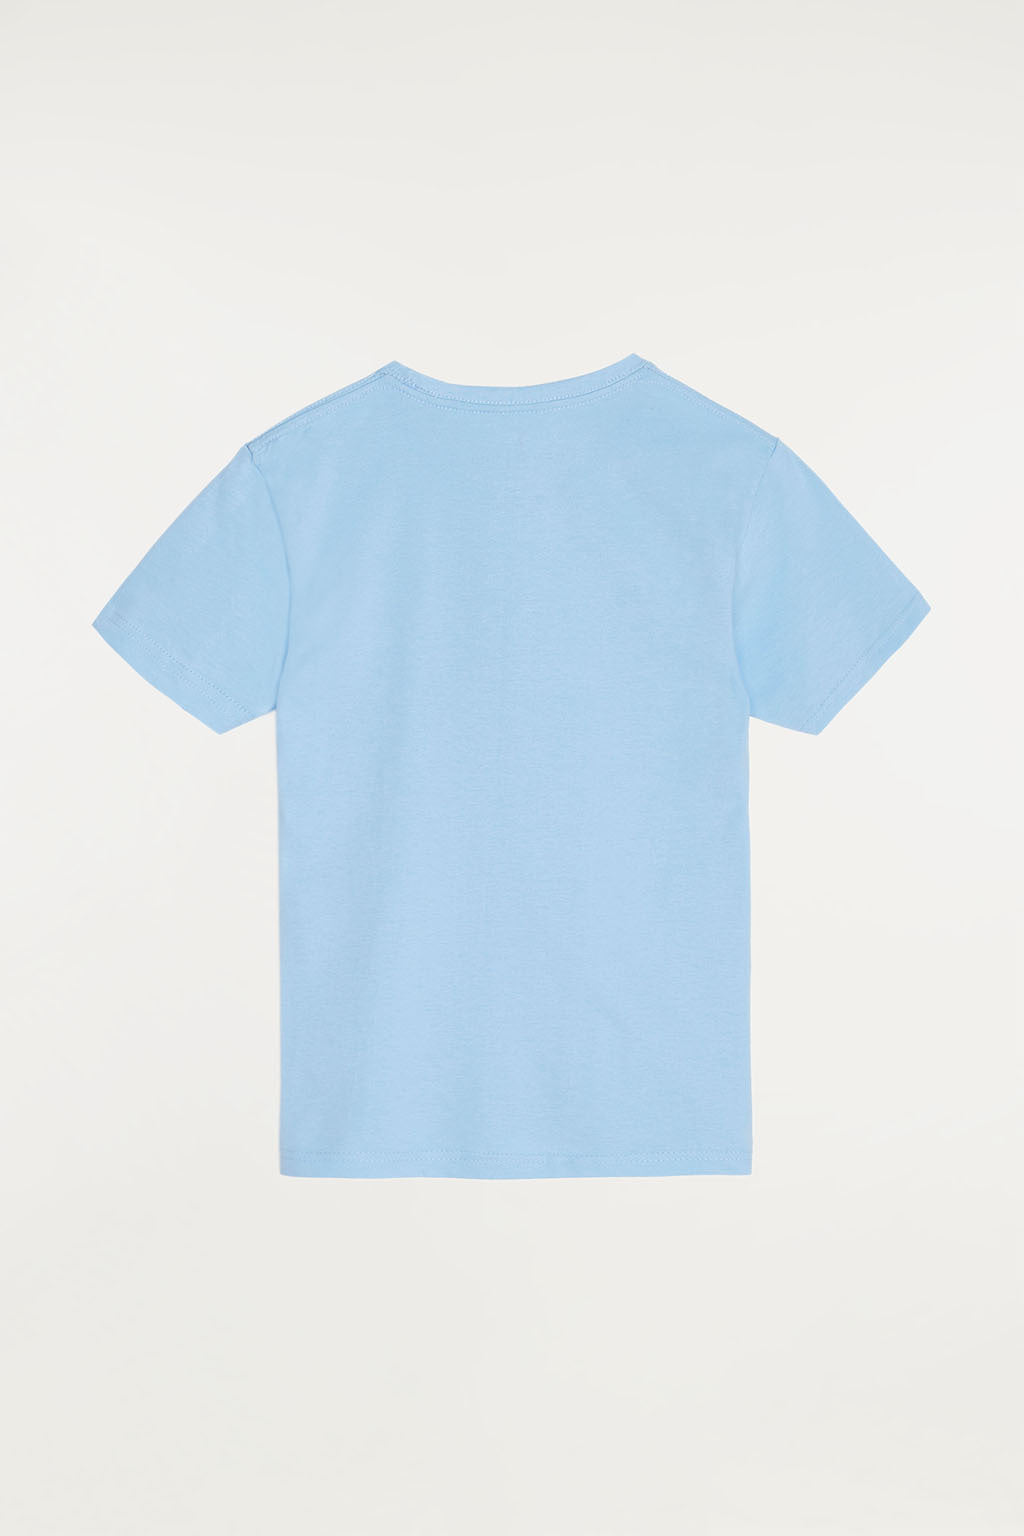 Camiseta azul celeste con pequeño logo bordado – Polo Club